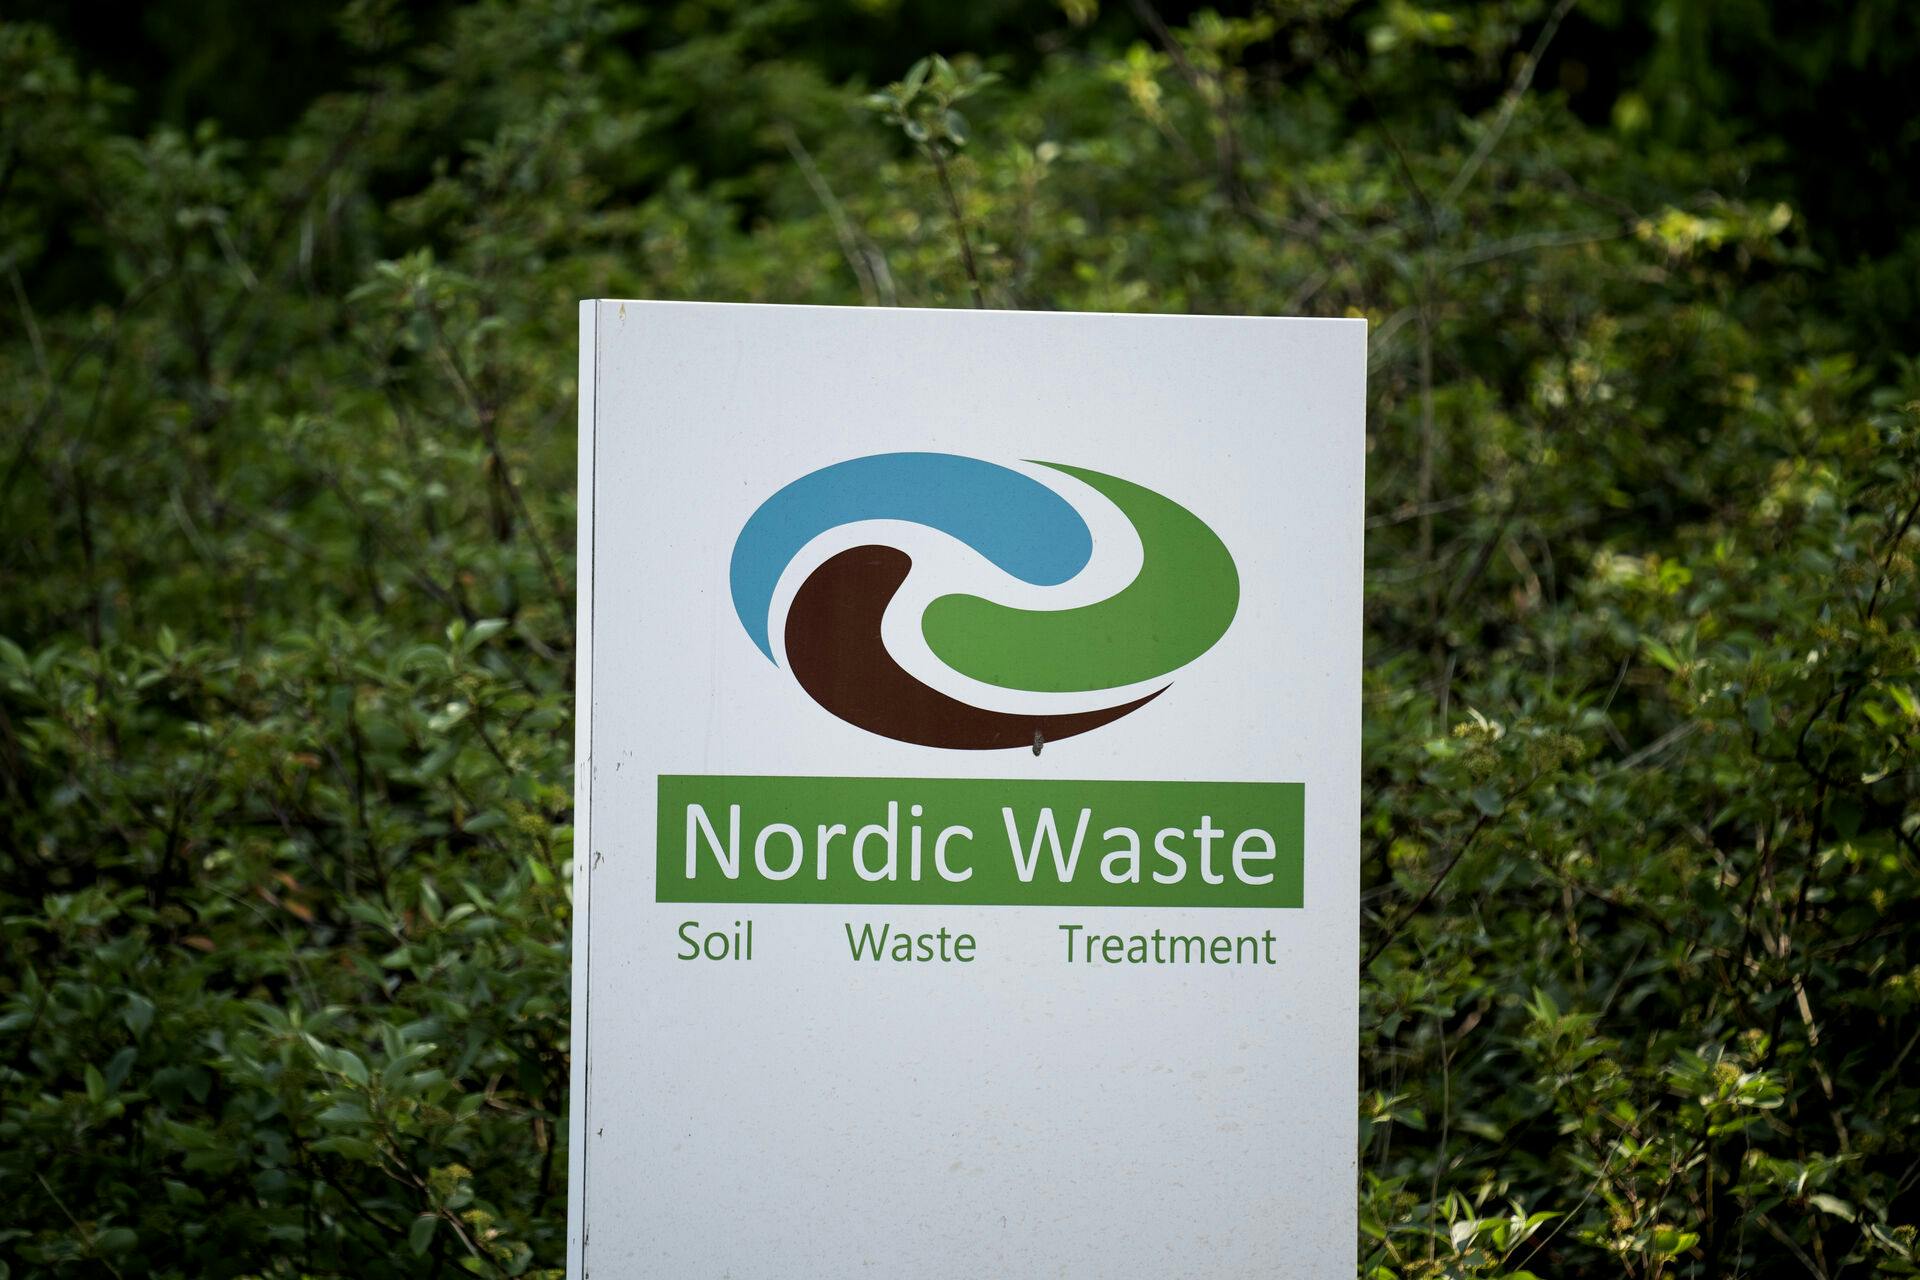 Jordrensningsvirksomheden Nordic Waste, som gennem flere uger har kæmpet med at få et stort jordskred under kontrol i Randers, er nødt til at opsige medarbejdere.